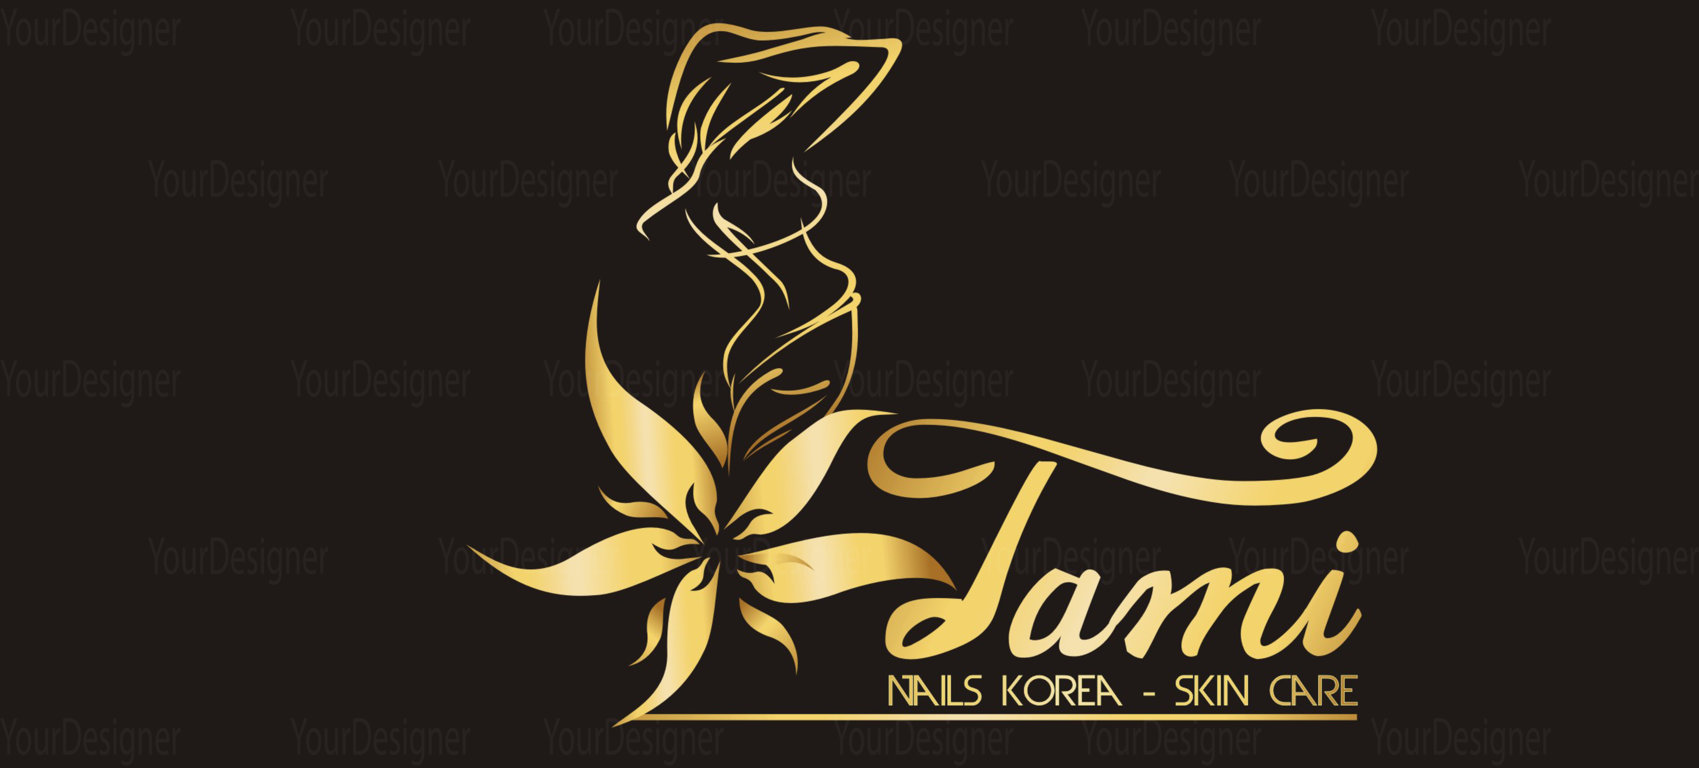 thiết kế logo chuyên nghiệp